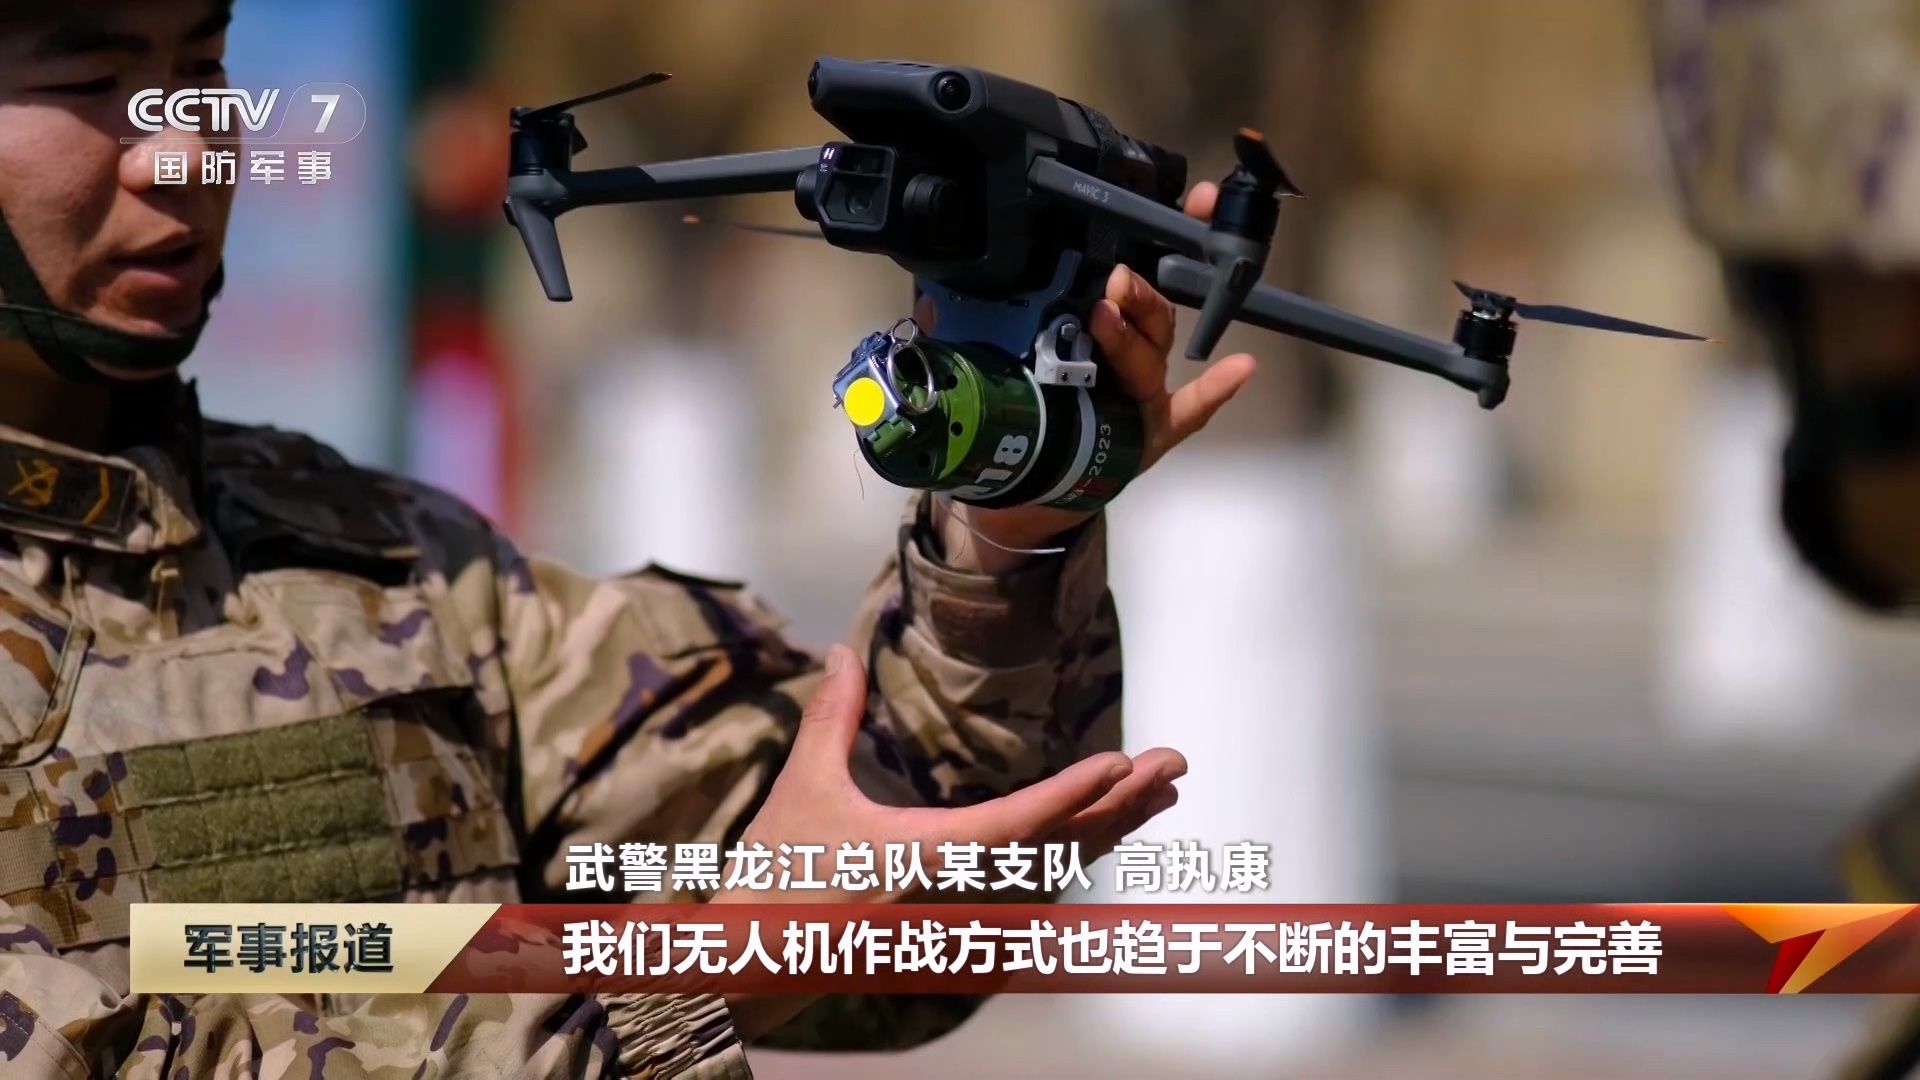 大疆Mavic 3无人机用于武警部队作战方式训练